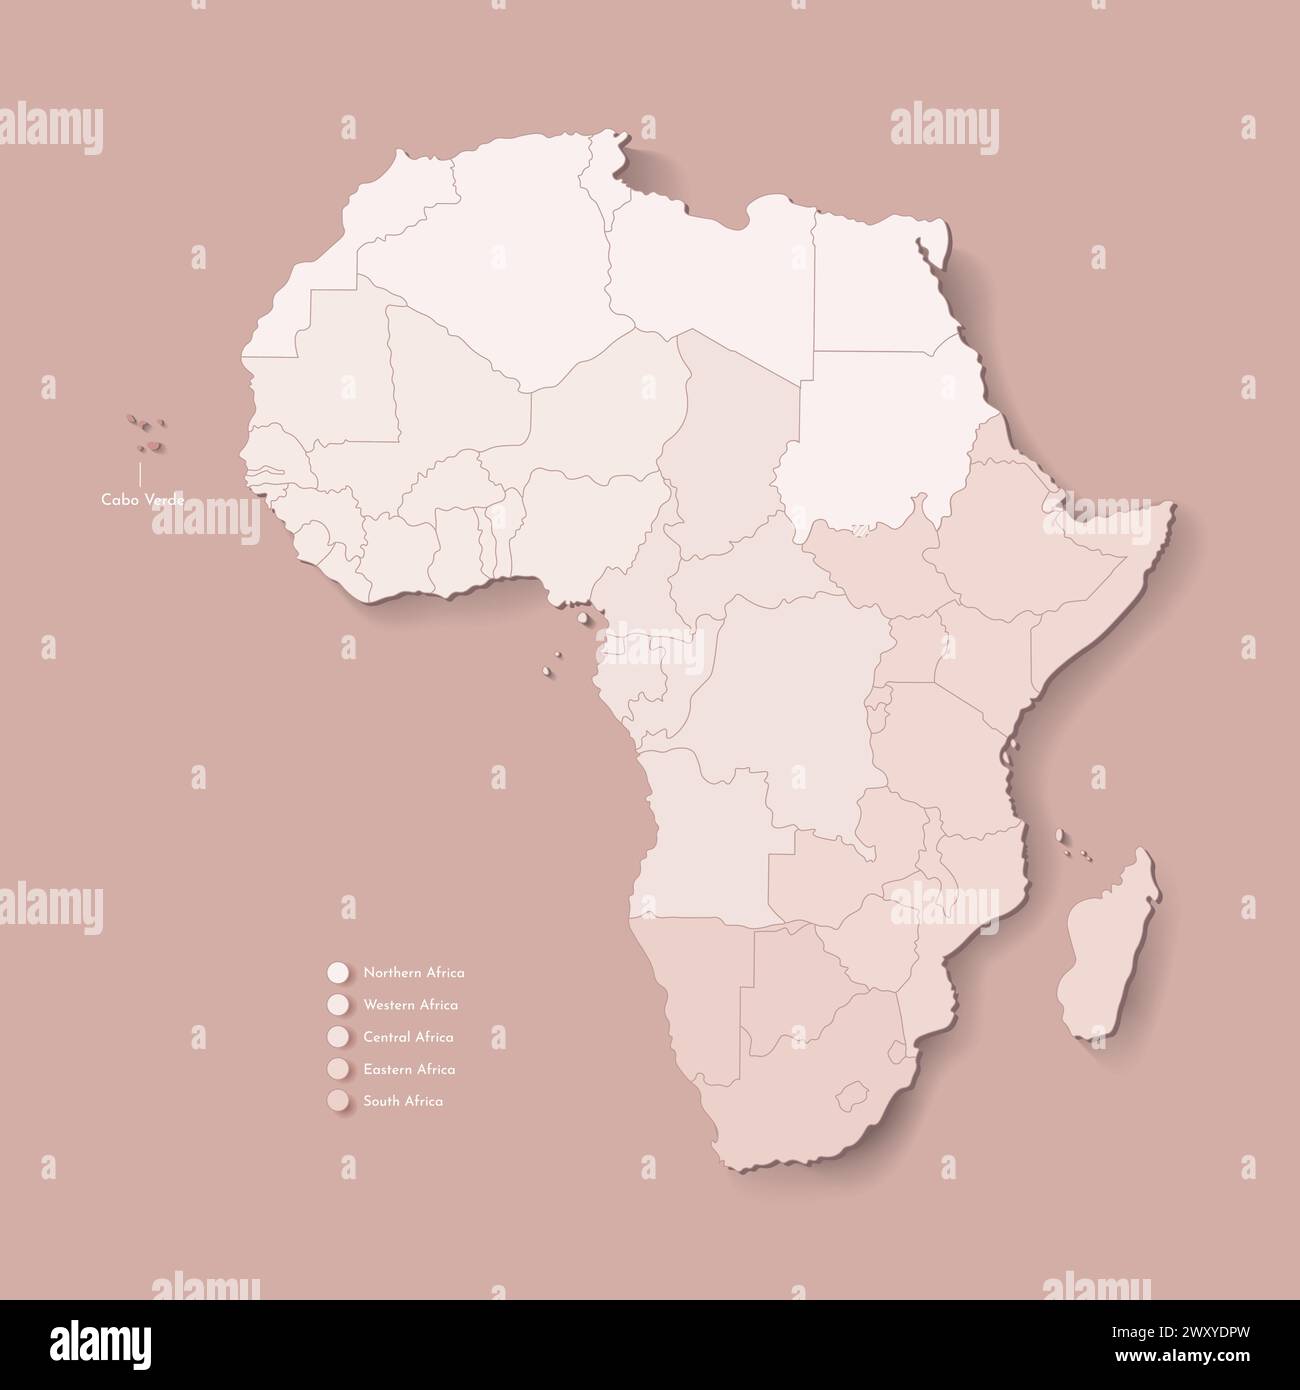 Vektor-Illustration mit afrikanischem Kontinent mit Grenzen aller staaten und markiertem Land Kap Verde. Politische Karte in Kamelbraun mit hervorgehobenem Fahrerhaus Stock Vektor